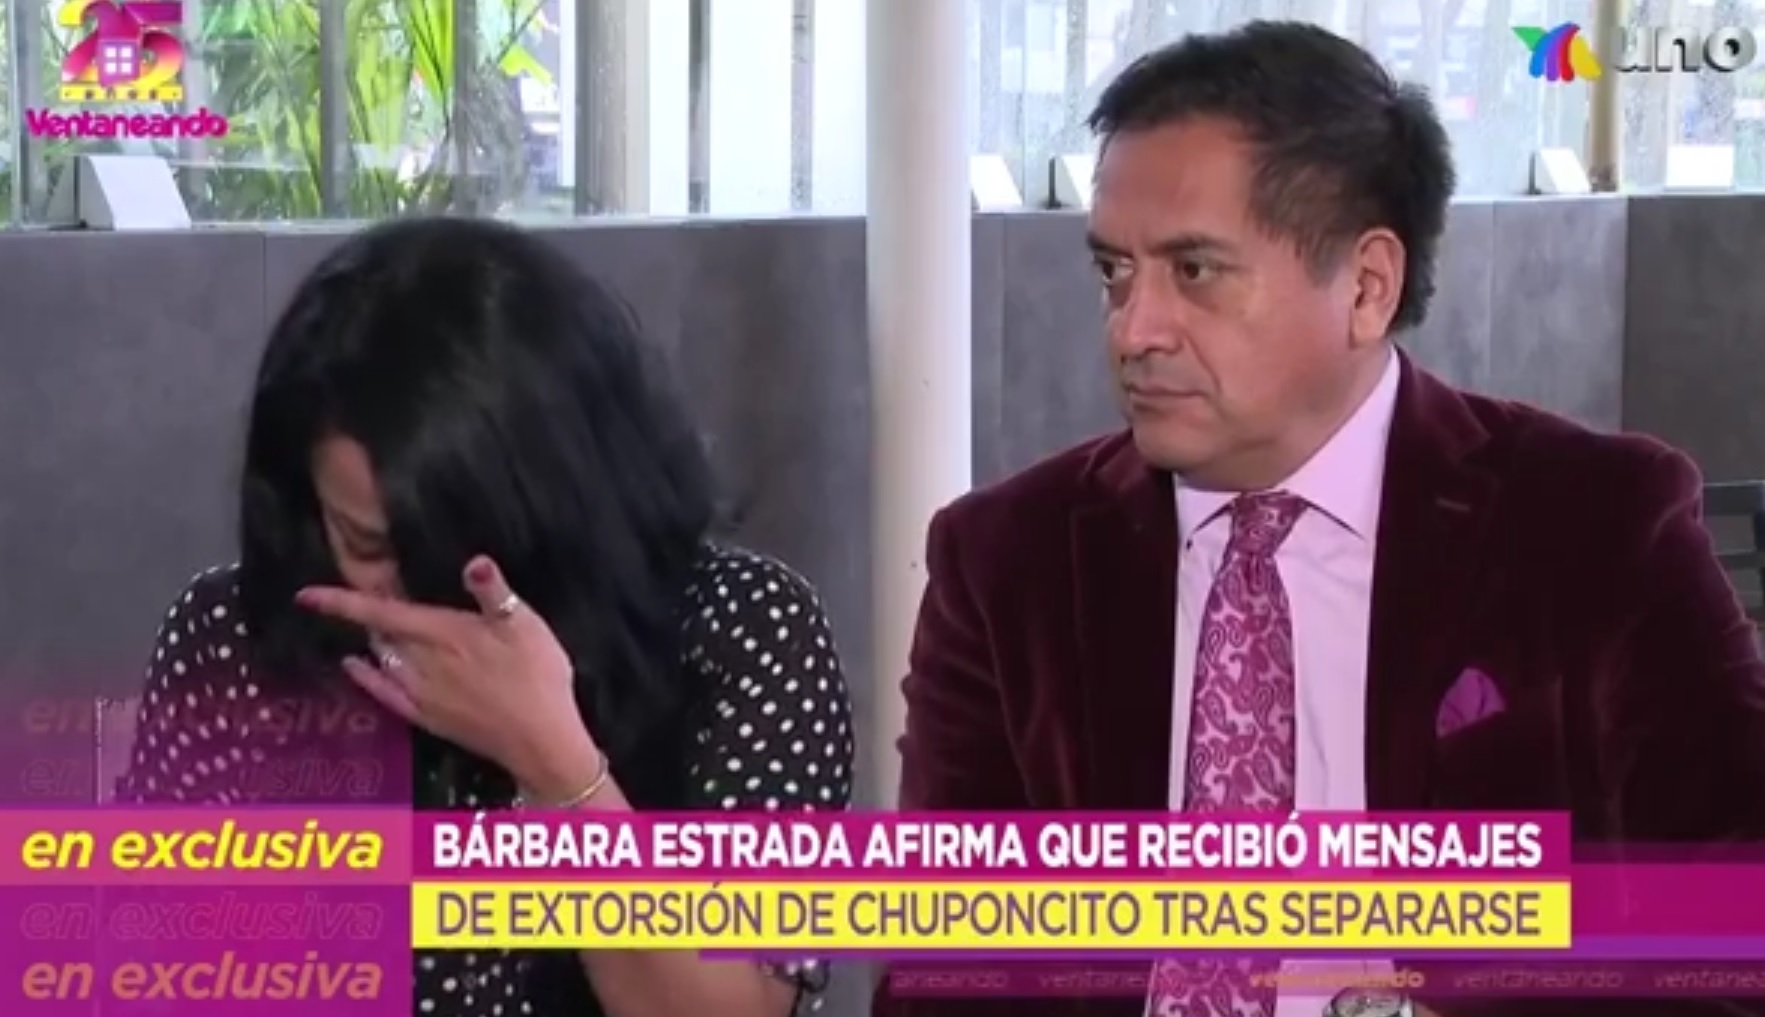 Bárbara Estrada aseguró que Chuponcito la extorsionó con sus fotografías íntimas (Foto: Captura de pantalla/Twitter @ventanenadouno)